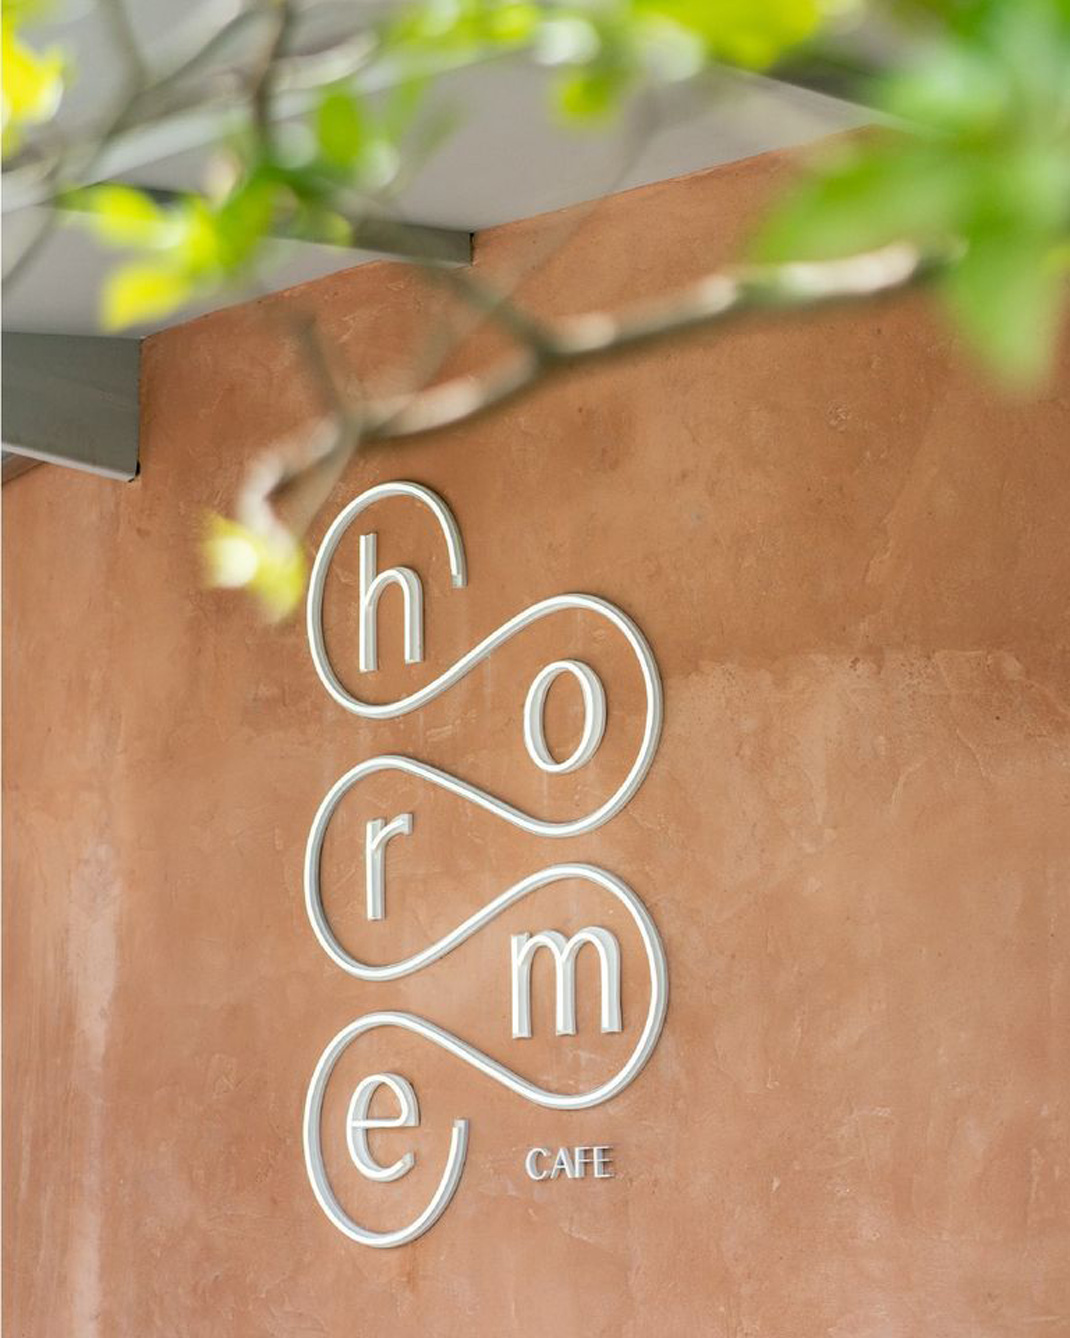 咖啡馆Horme Cafe 泰国 咖啡店 字体设计 圆形 logo设计 vi设计 空间设计